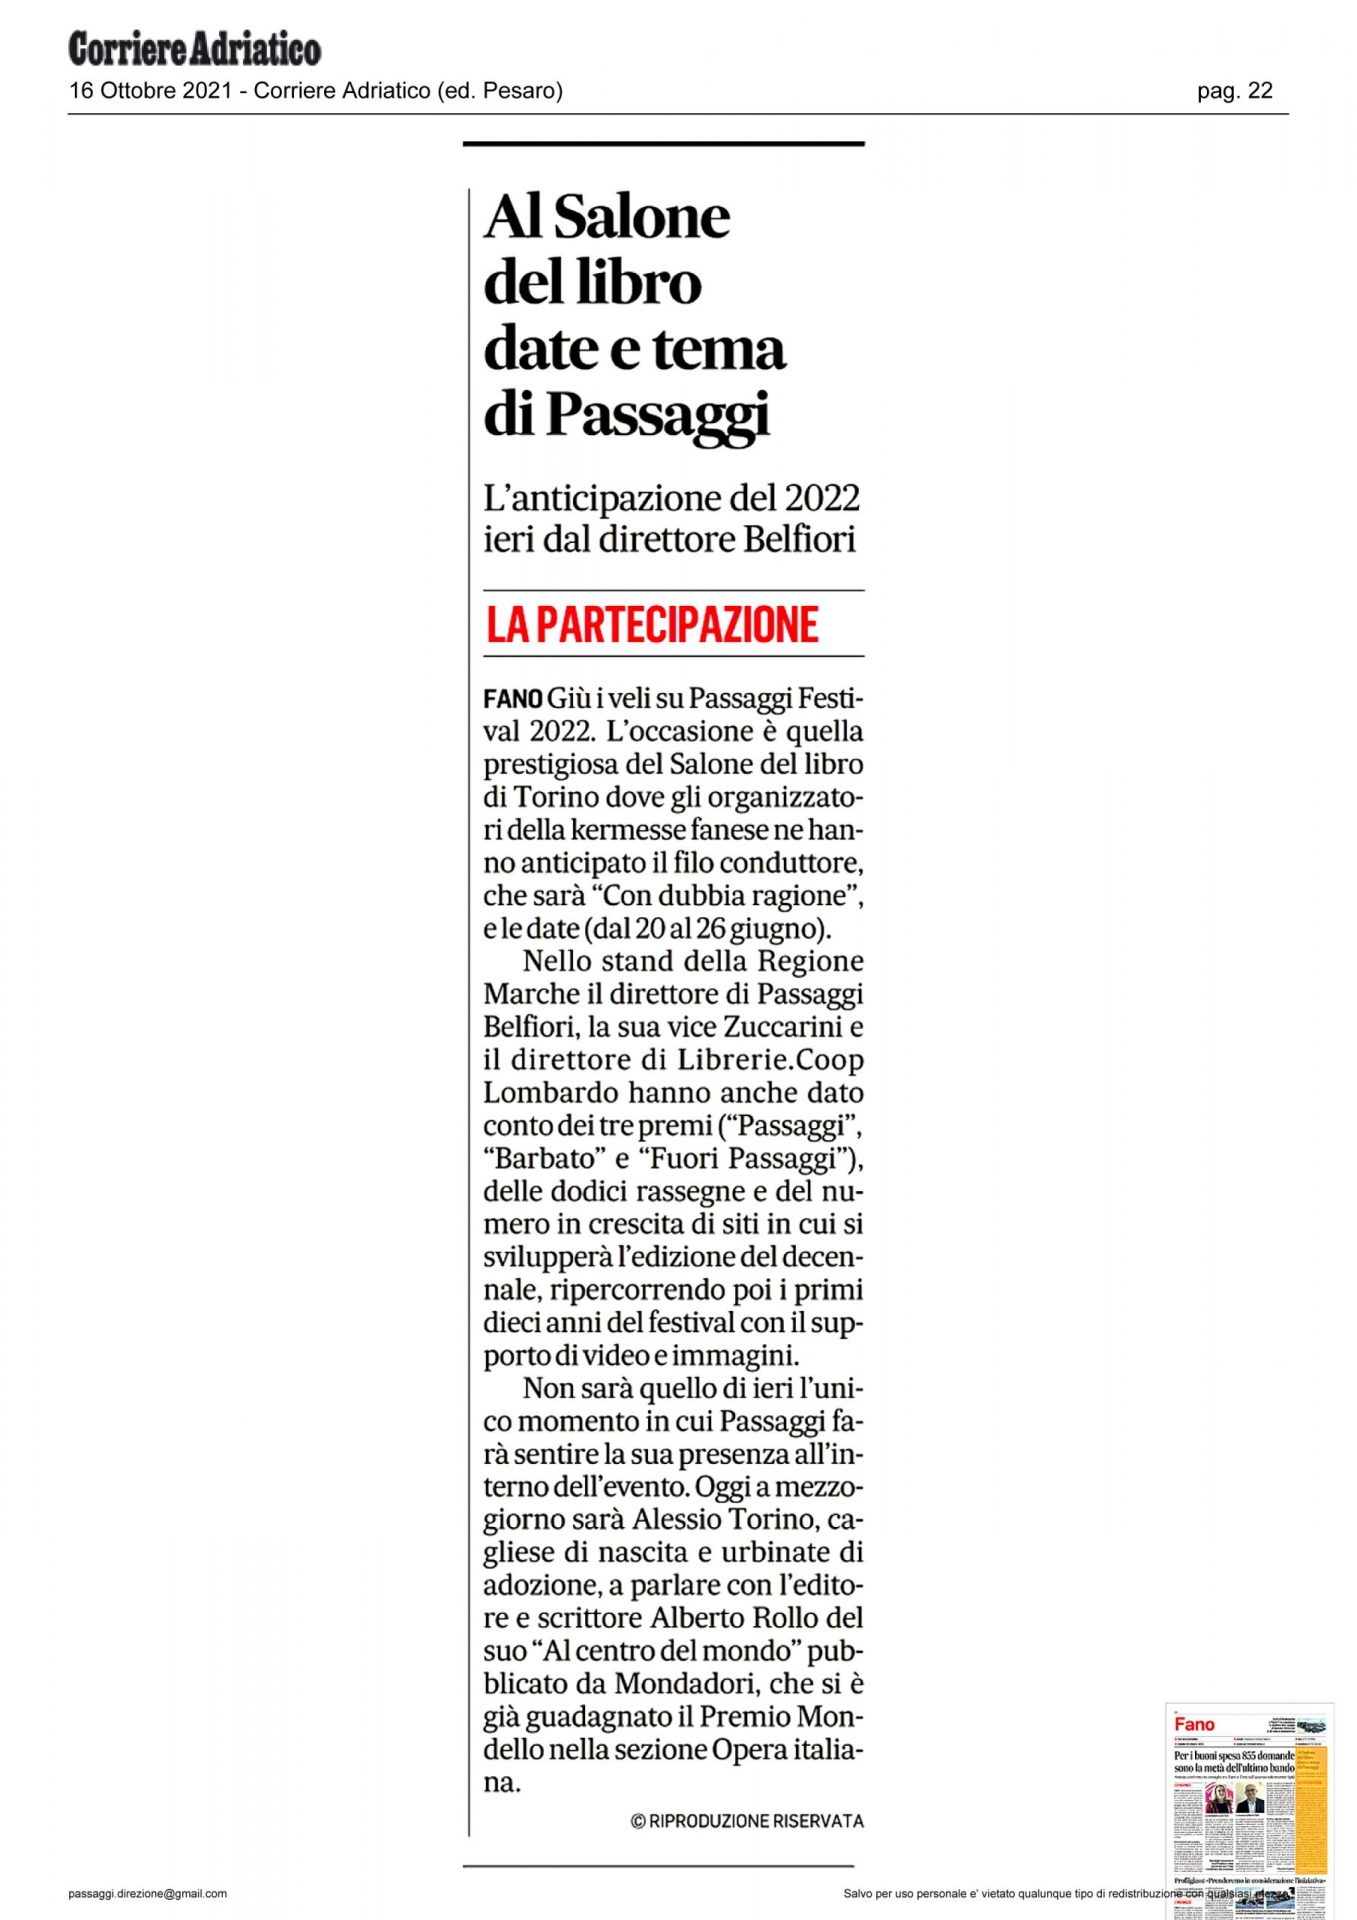 Corriere_Adriatico_al-salone-del-libro-date-e-tema-di-passaggi